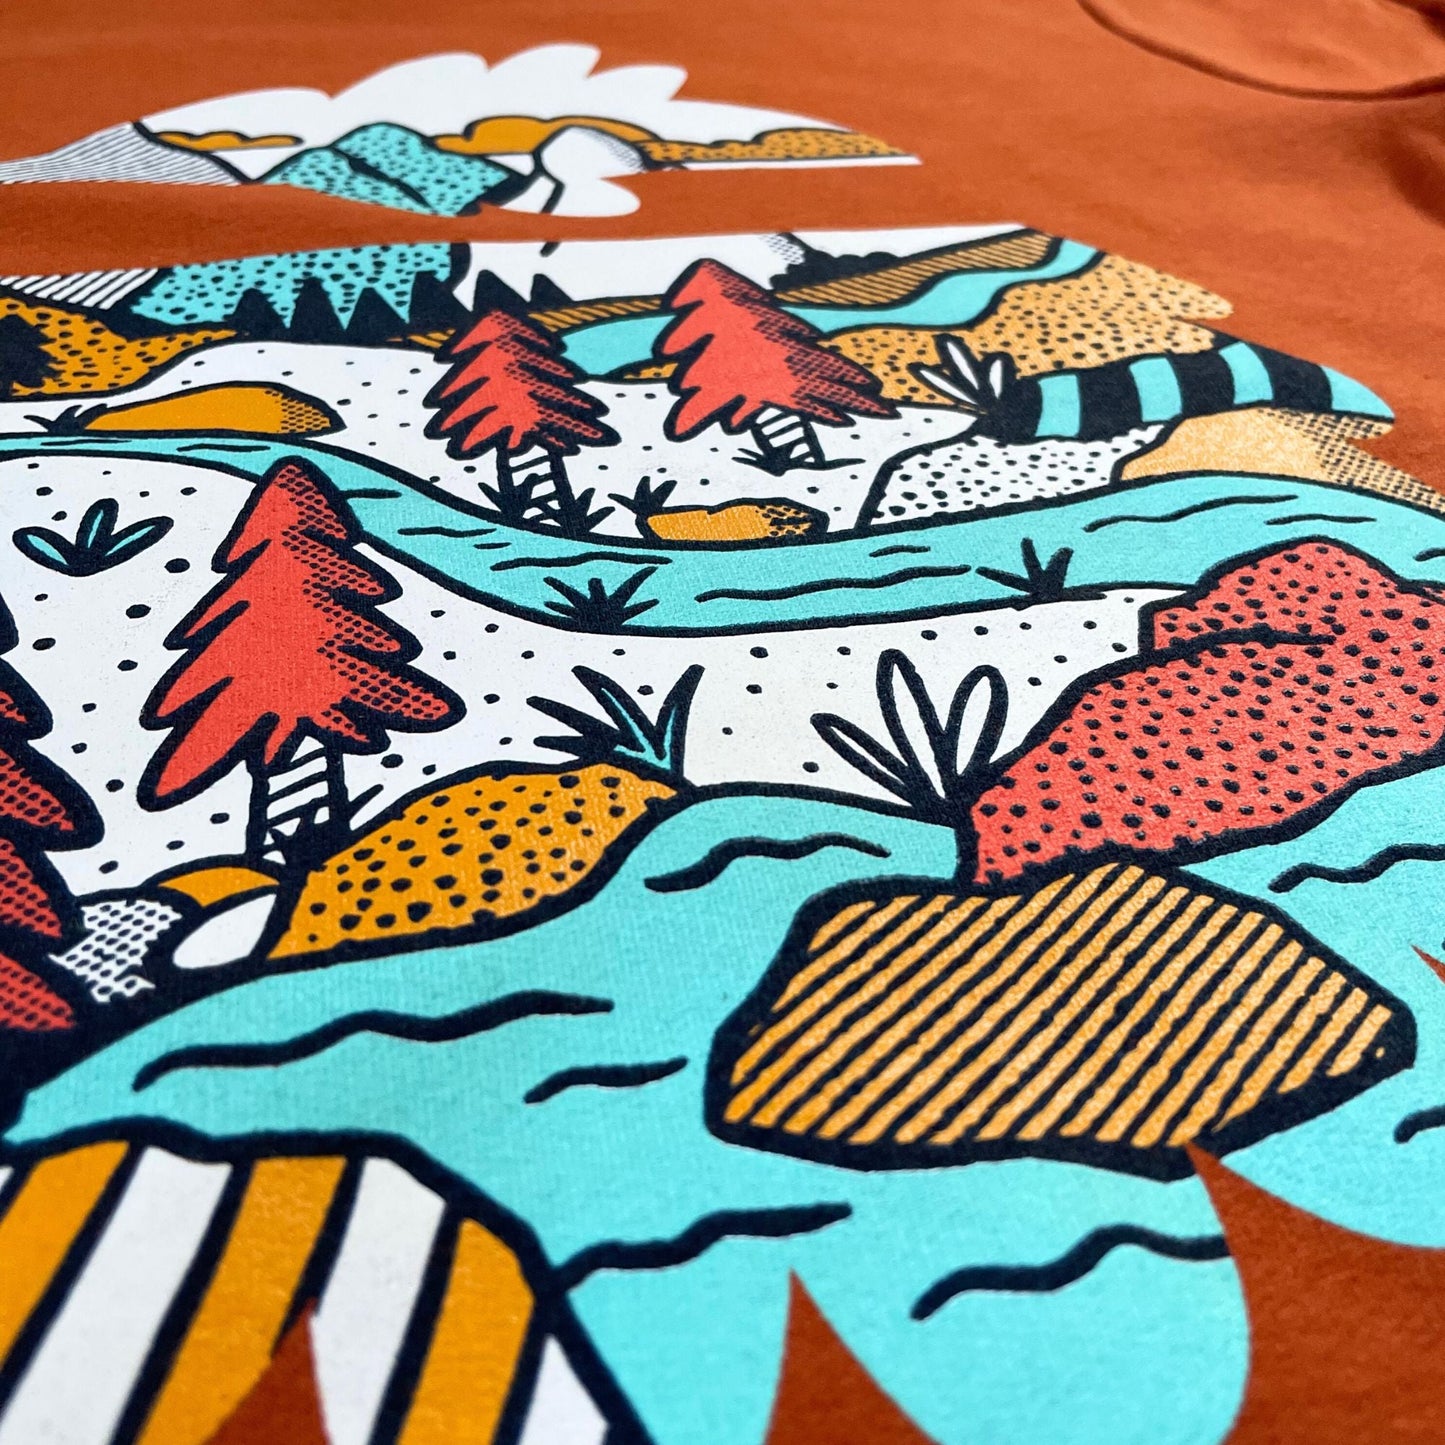 Bigfoot's Wilderness Sweatshirt - Bigfoot Kick